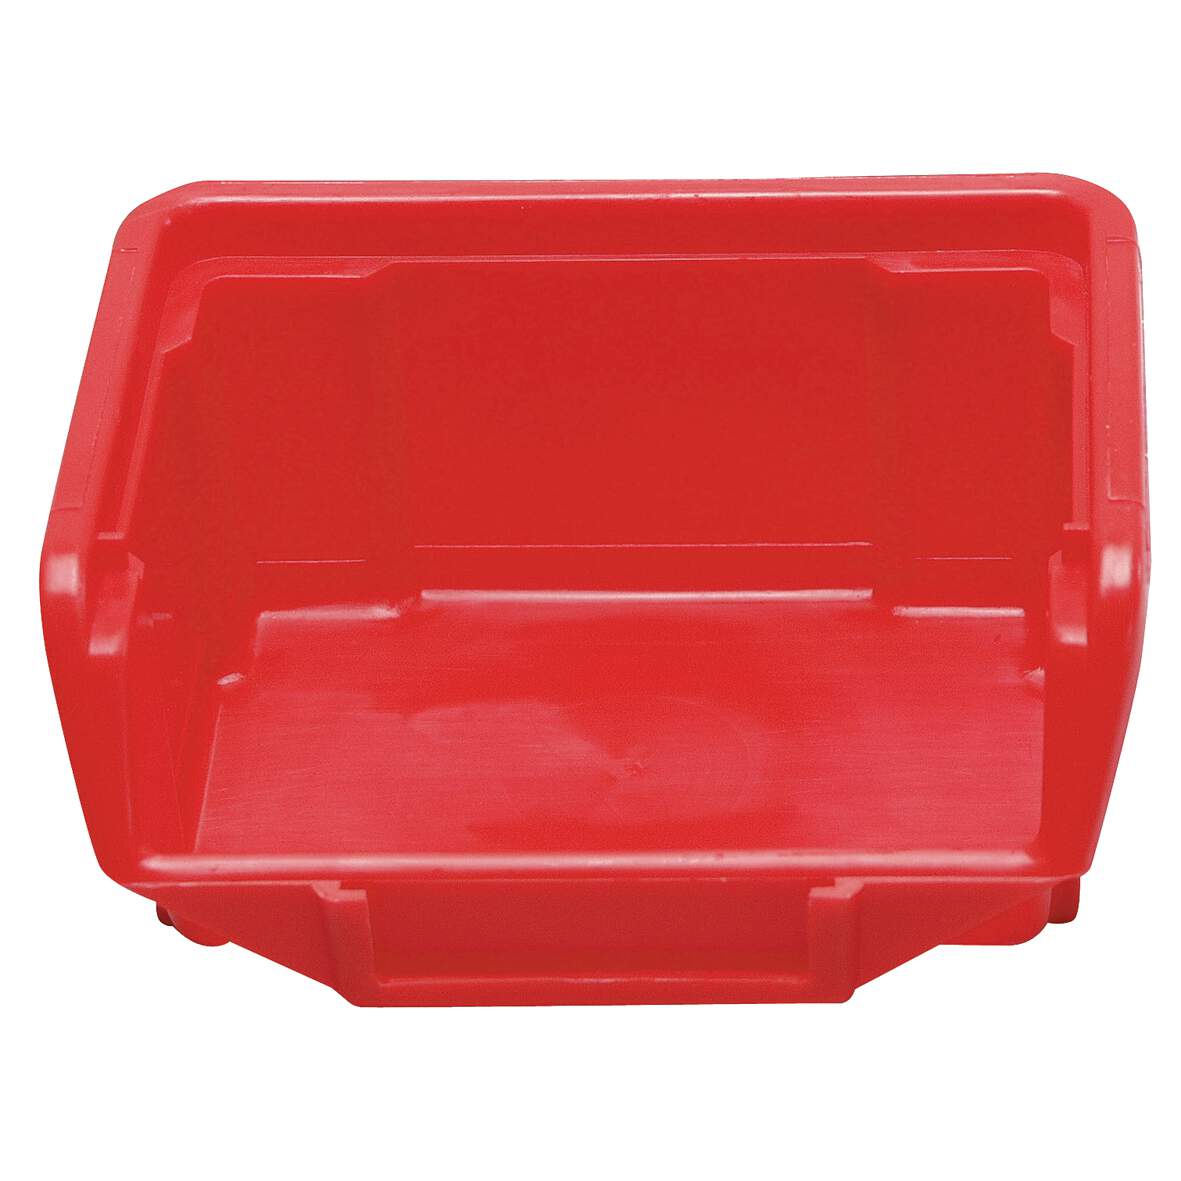 1032525 - Stapelbox rot Größe 5